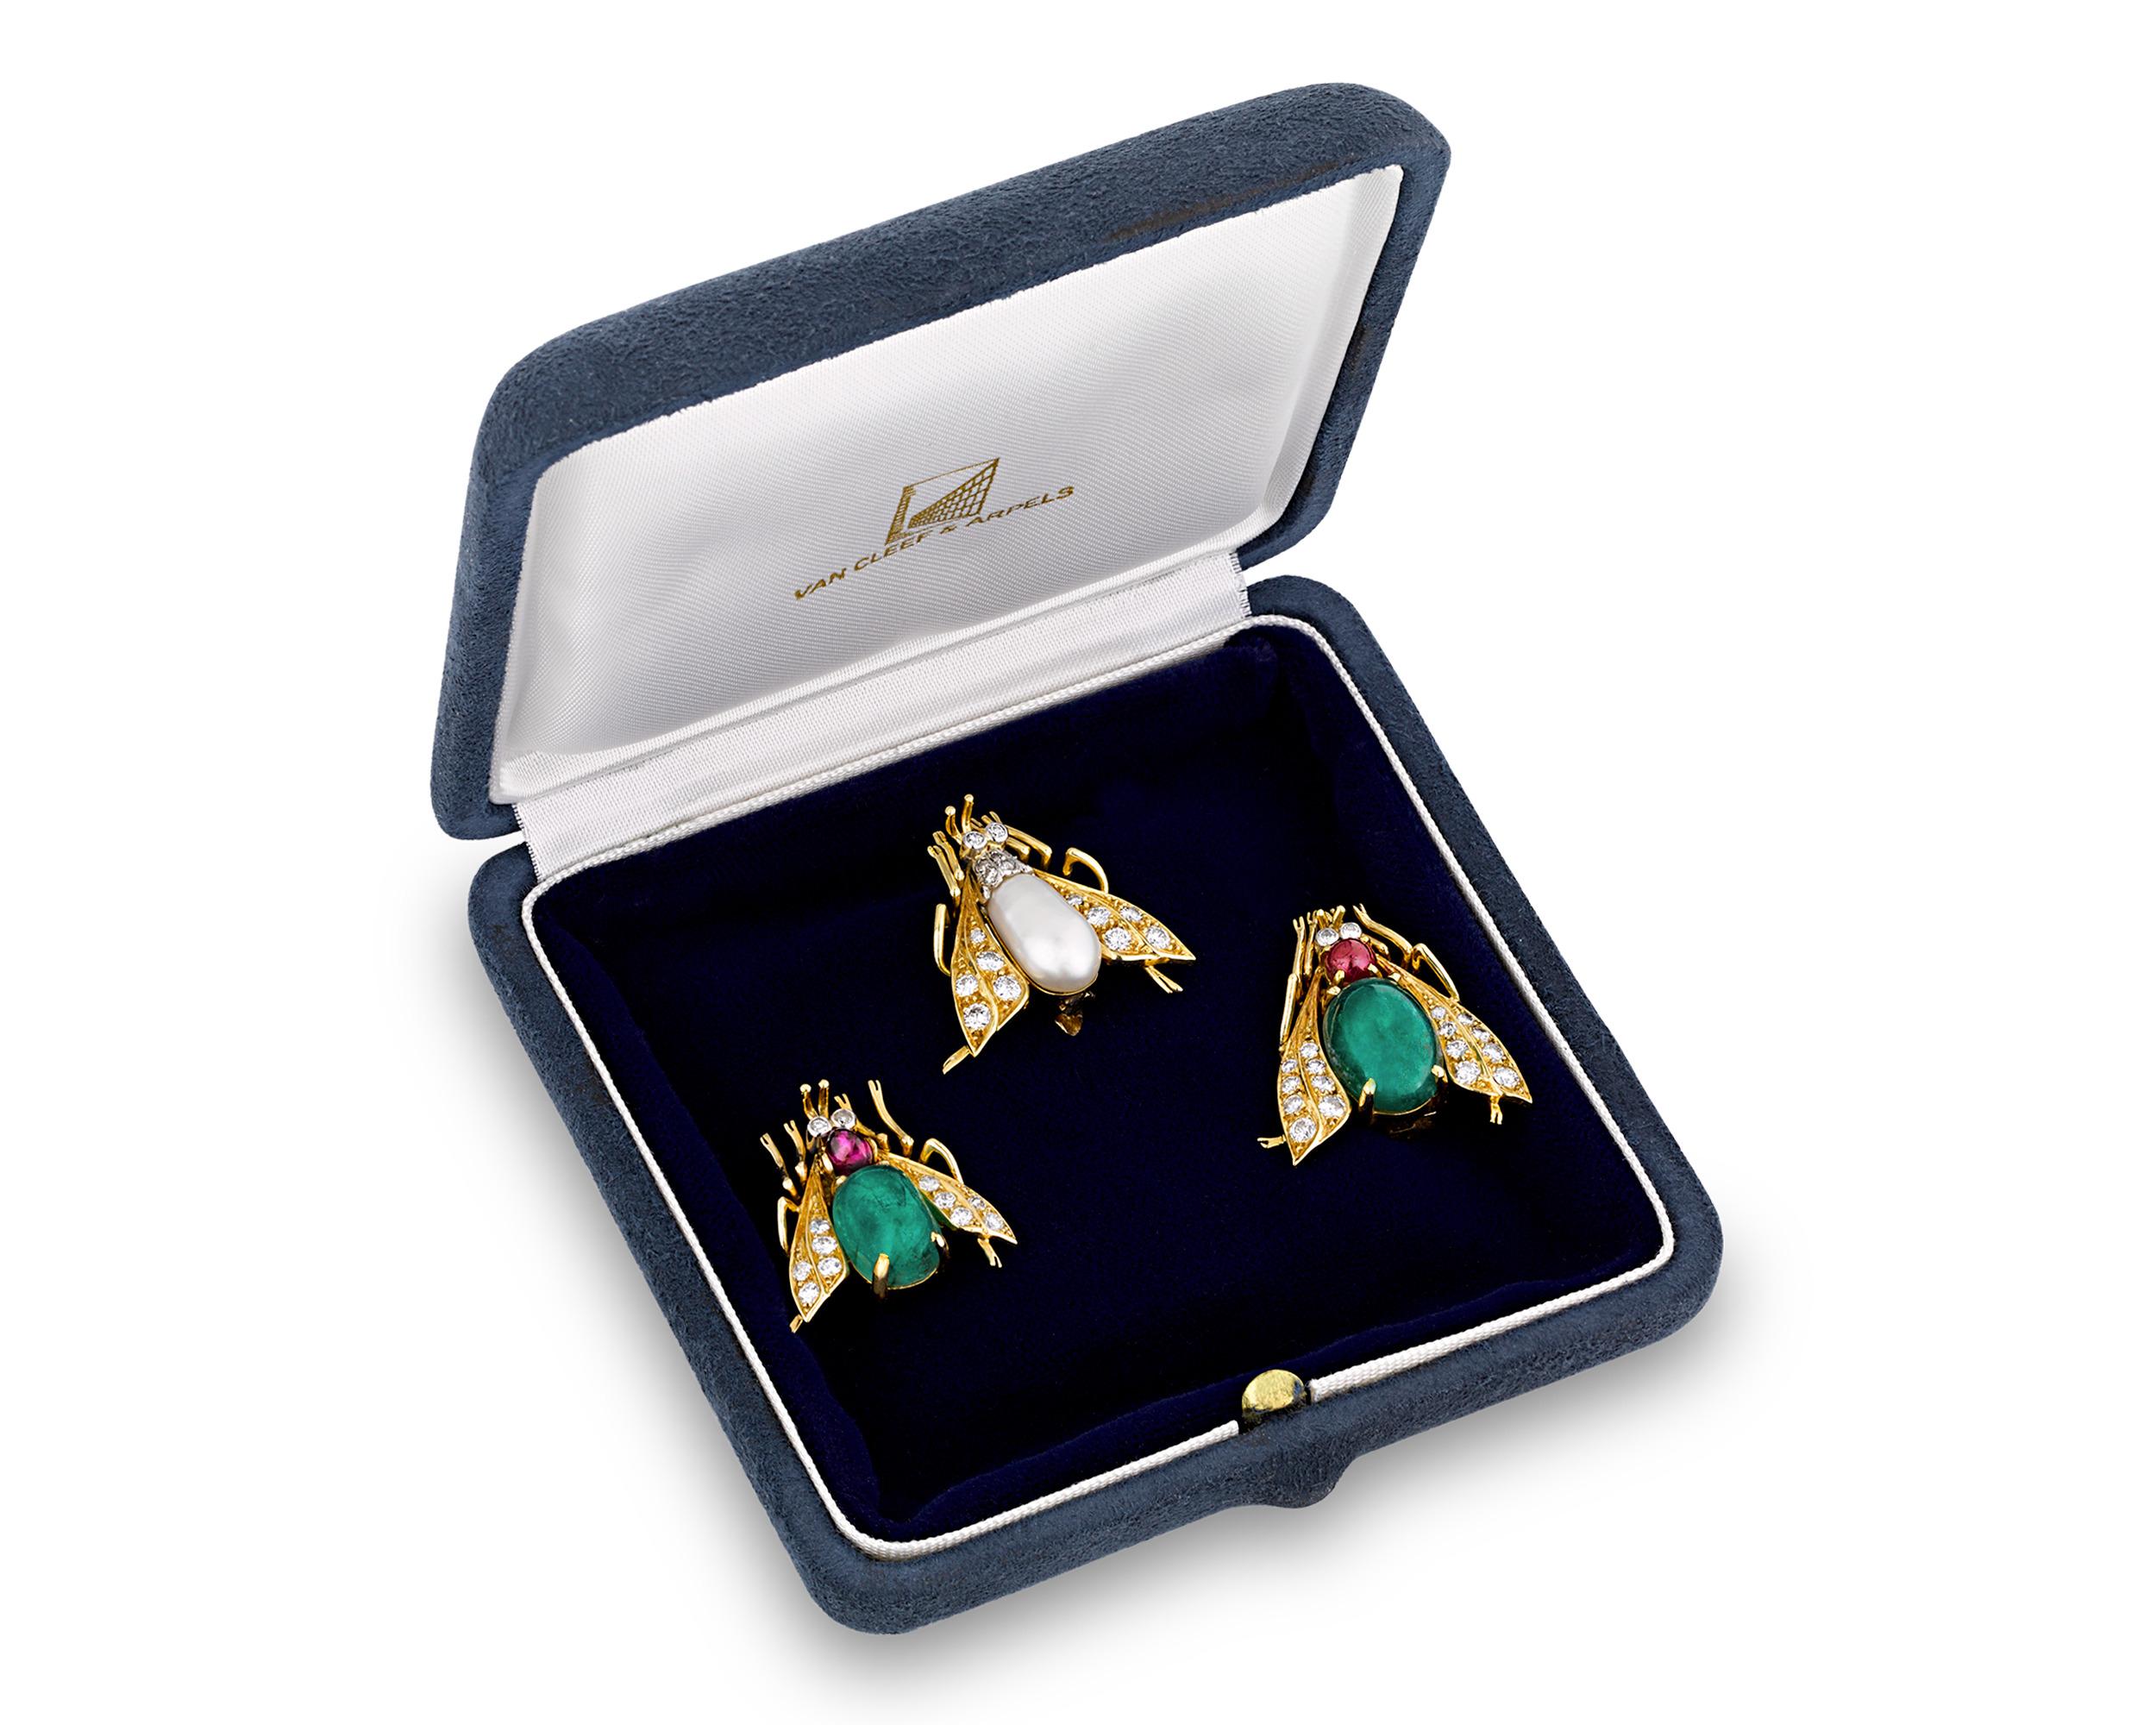 Dieses Trio von Anstecknadeln des französischen Juweliers Van Cleef & Arpels strahlt zeitlosen Charme aus und hat die Form von skurrilen Bienen. Zwei Anstecknadeln sind mit glitzernden weißen Diamanten besetzt, zwei mit leuchtend grünen